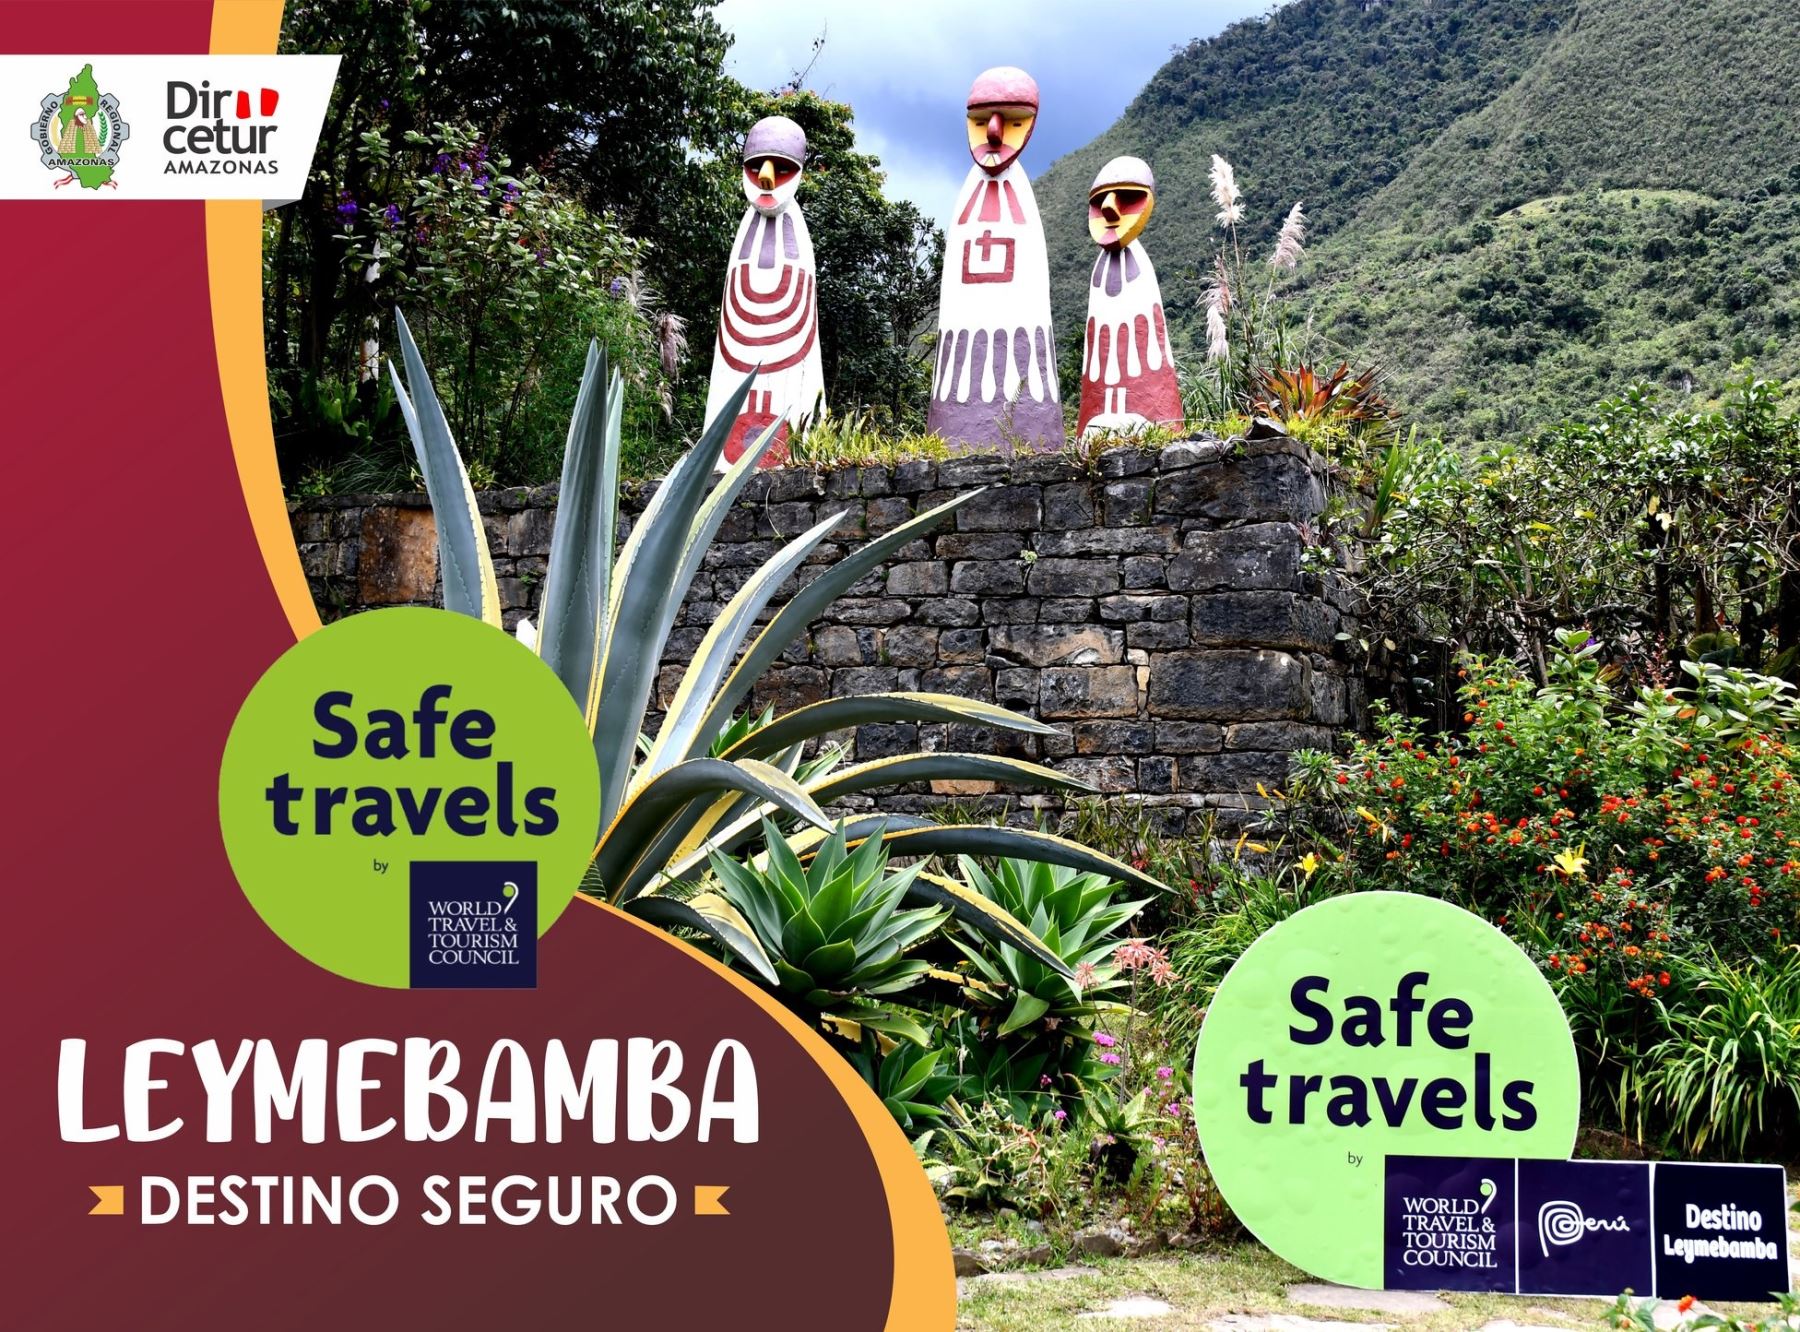 Leymebamba se convirtió en otro destino turístico de Amazonas declarado seguro ante el covid-19 luego de recibir el sello Safe Travels.